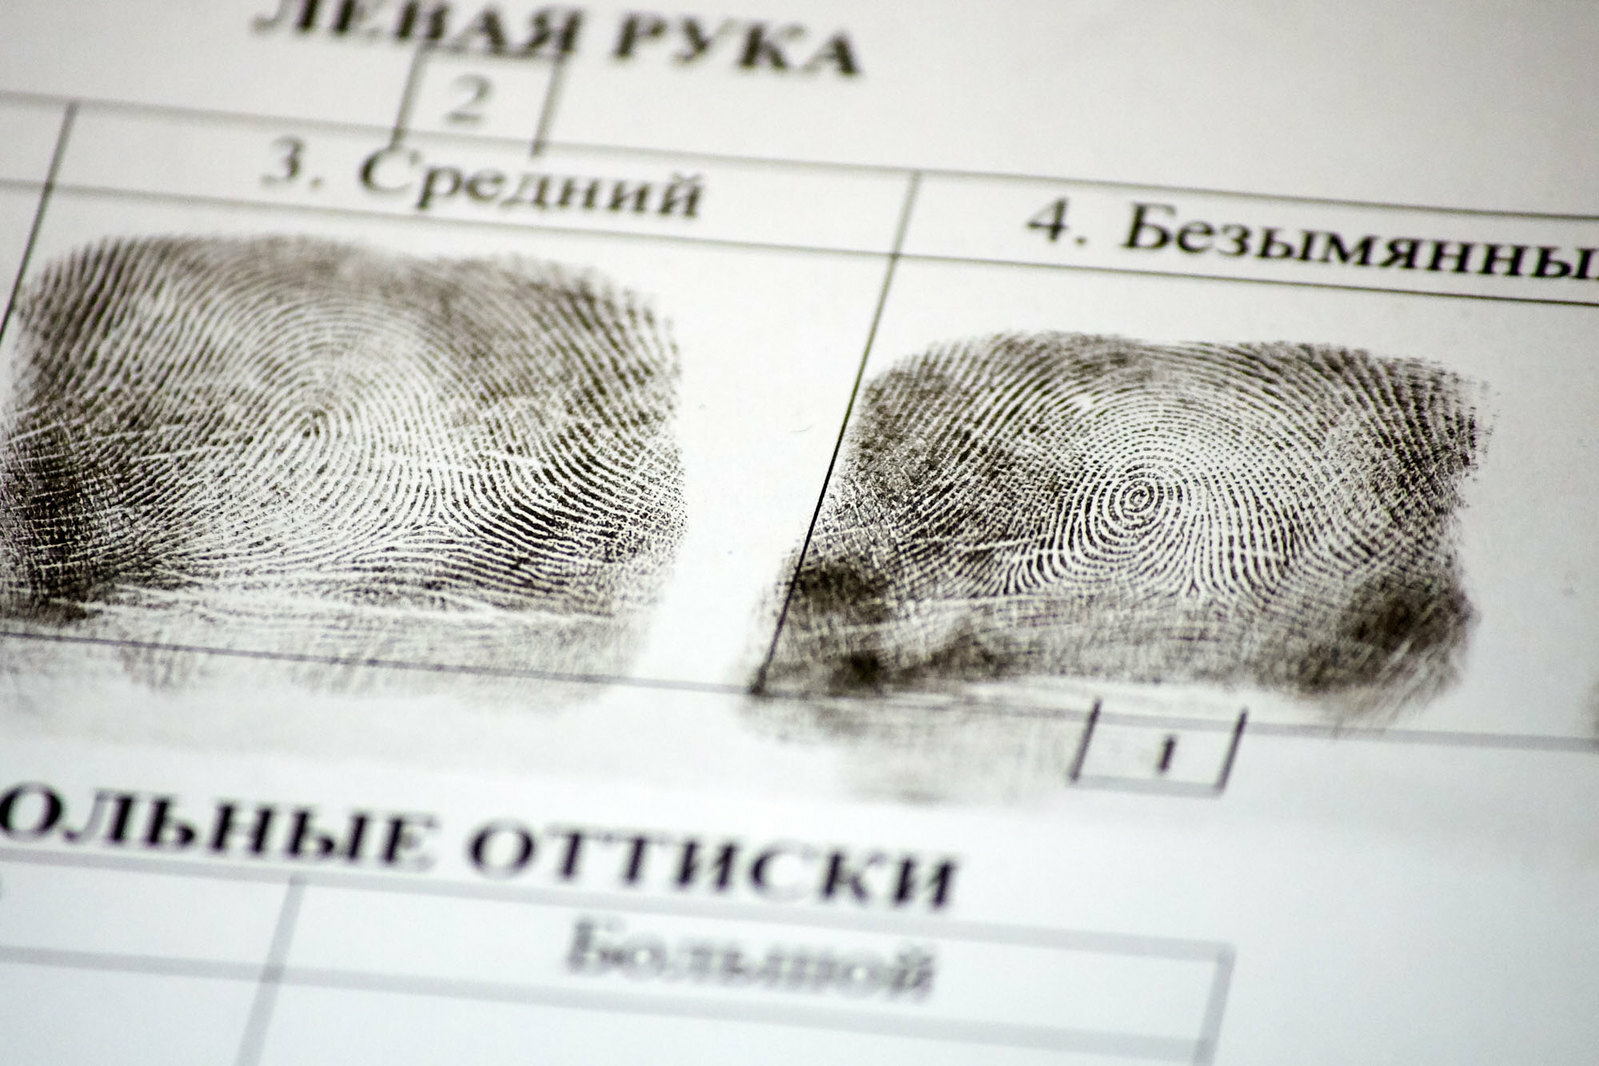 Криминалисты установили личность магазинного вора в Ижевске по следам рук